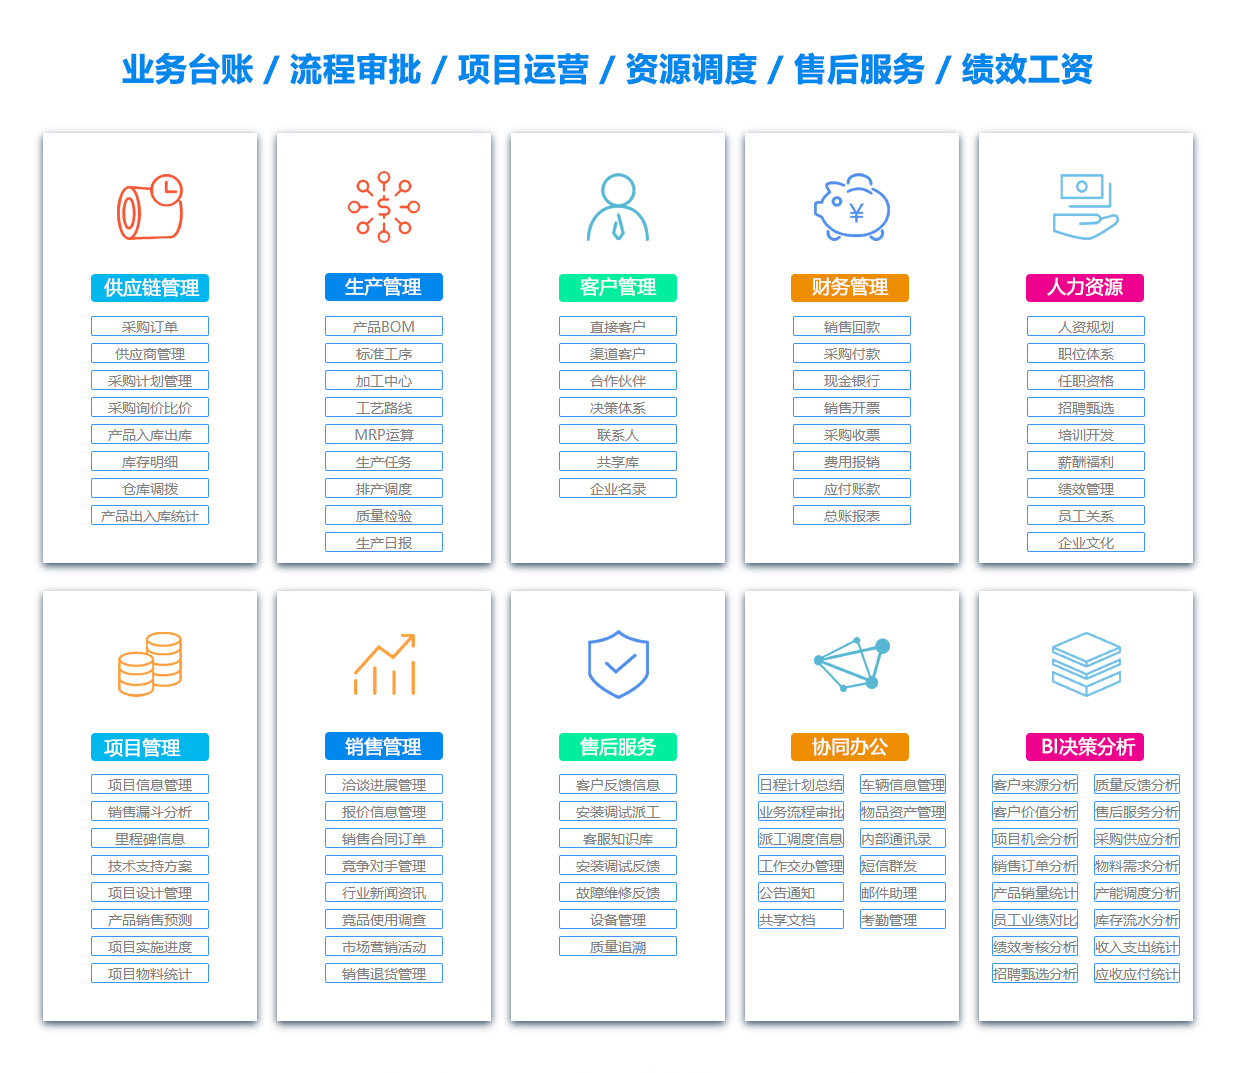 福州PDM:产品数据管理系统